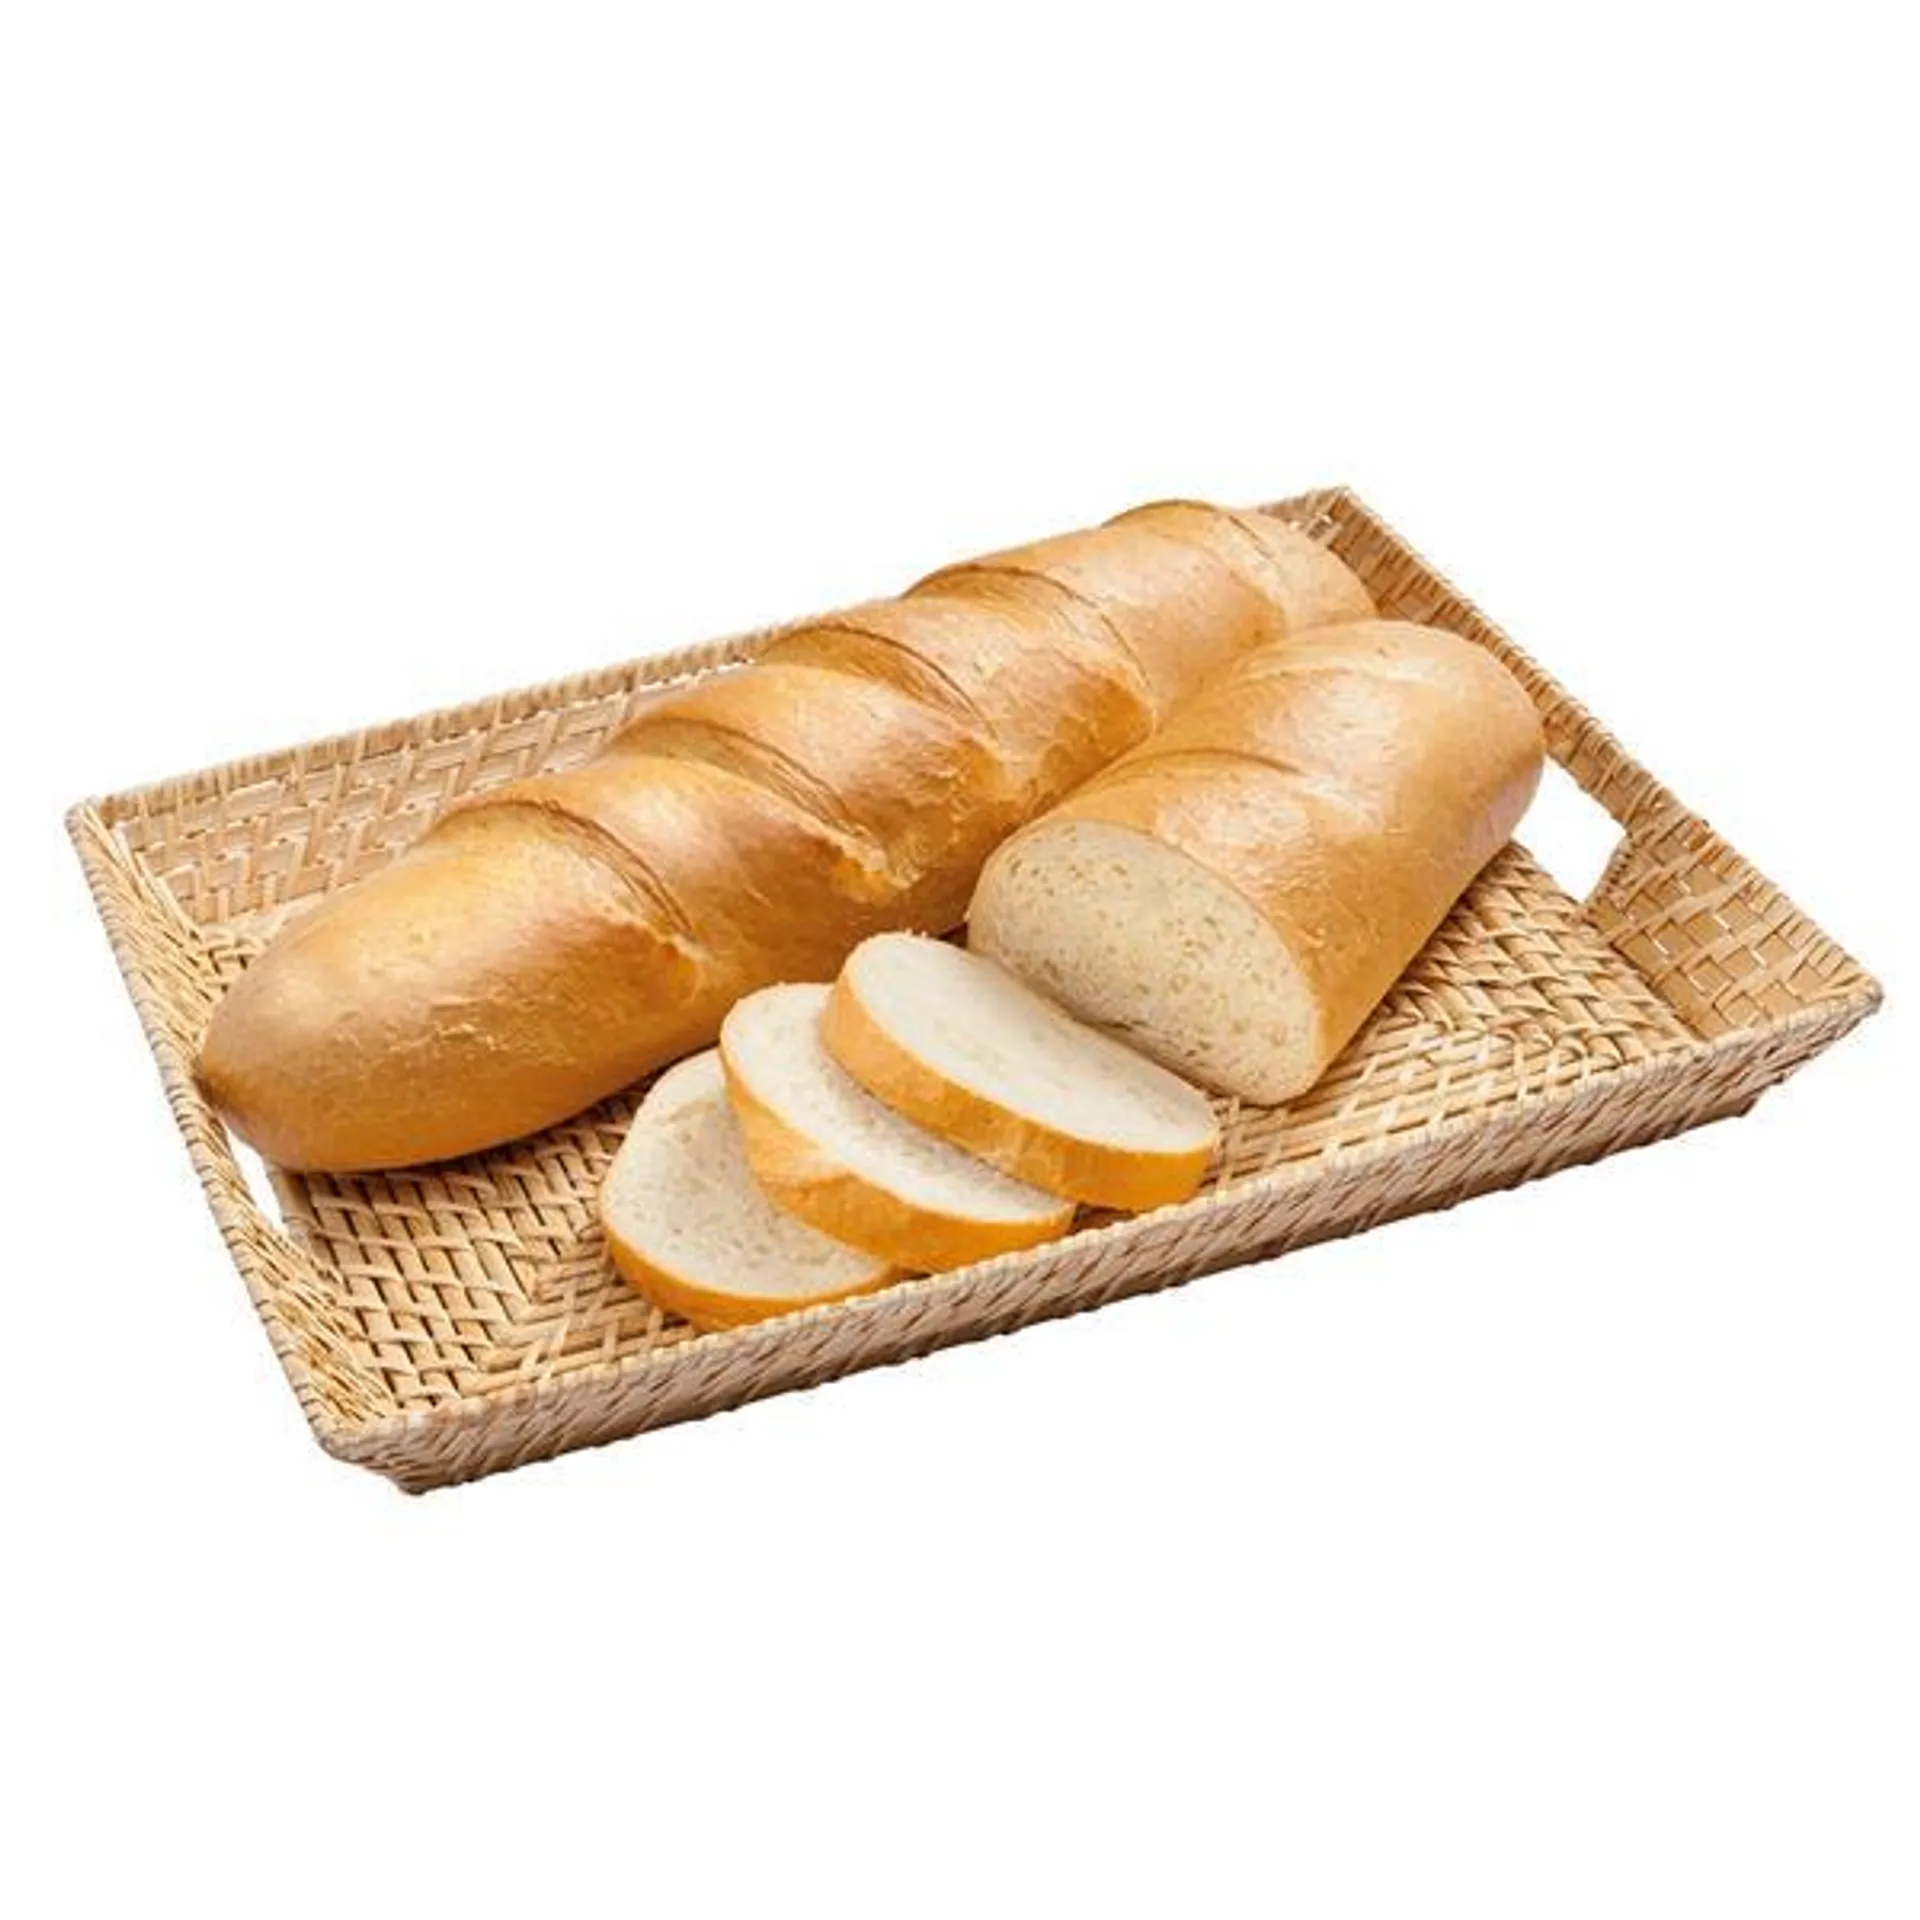 Ofenfrisches Brot